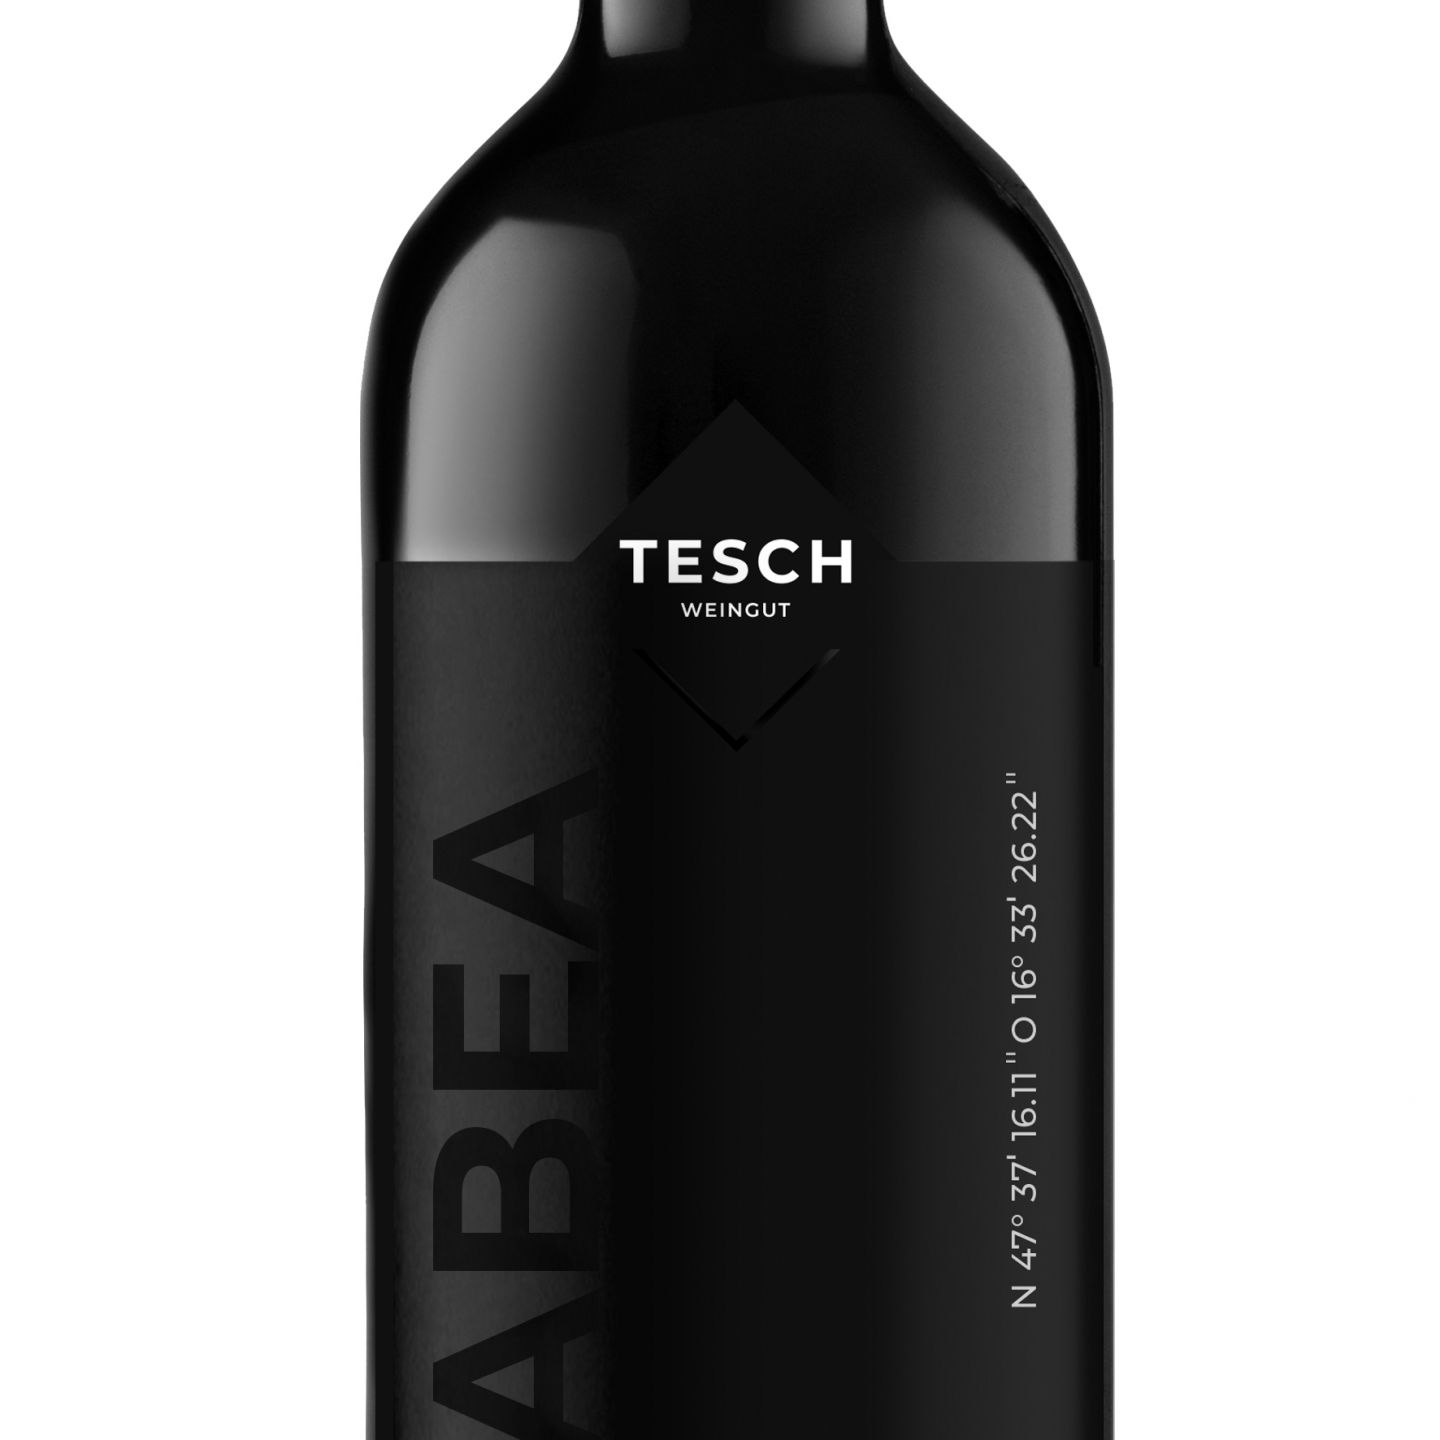 Tesch 2019 - Weingut Sauvignon - Cabernet Bauernladen Tabea